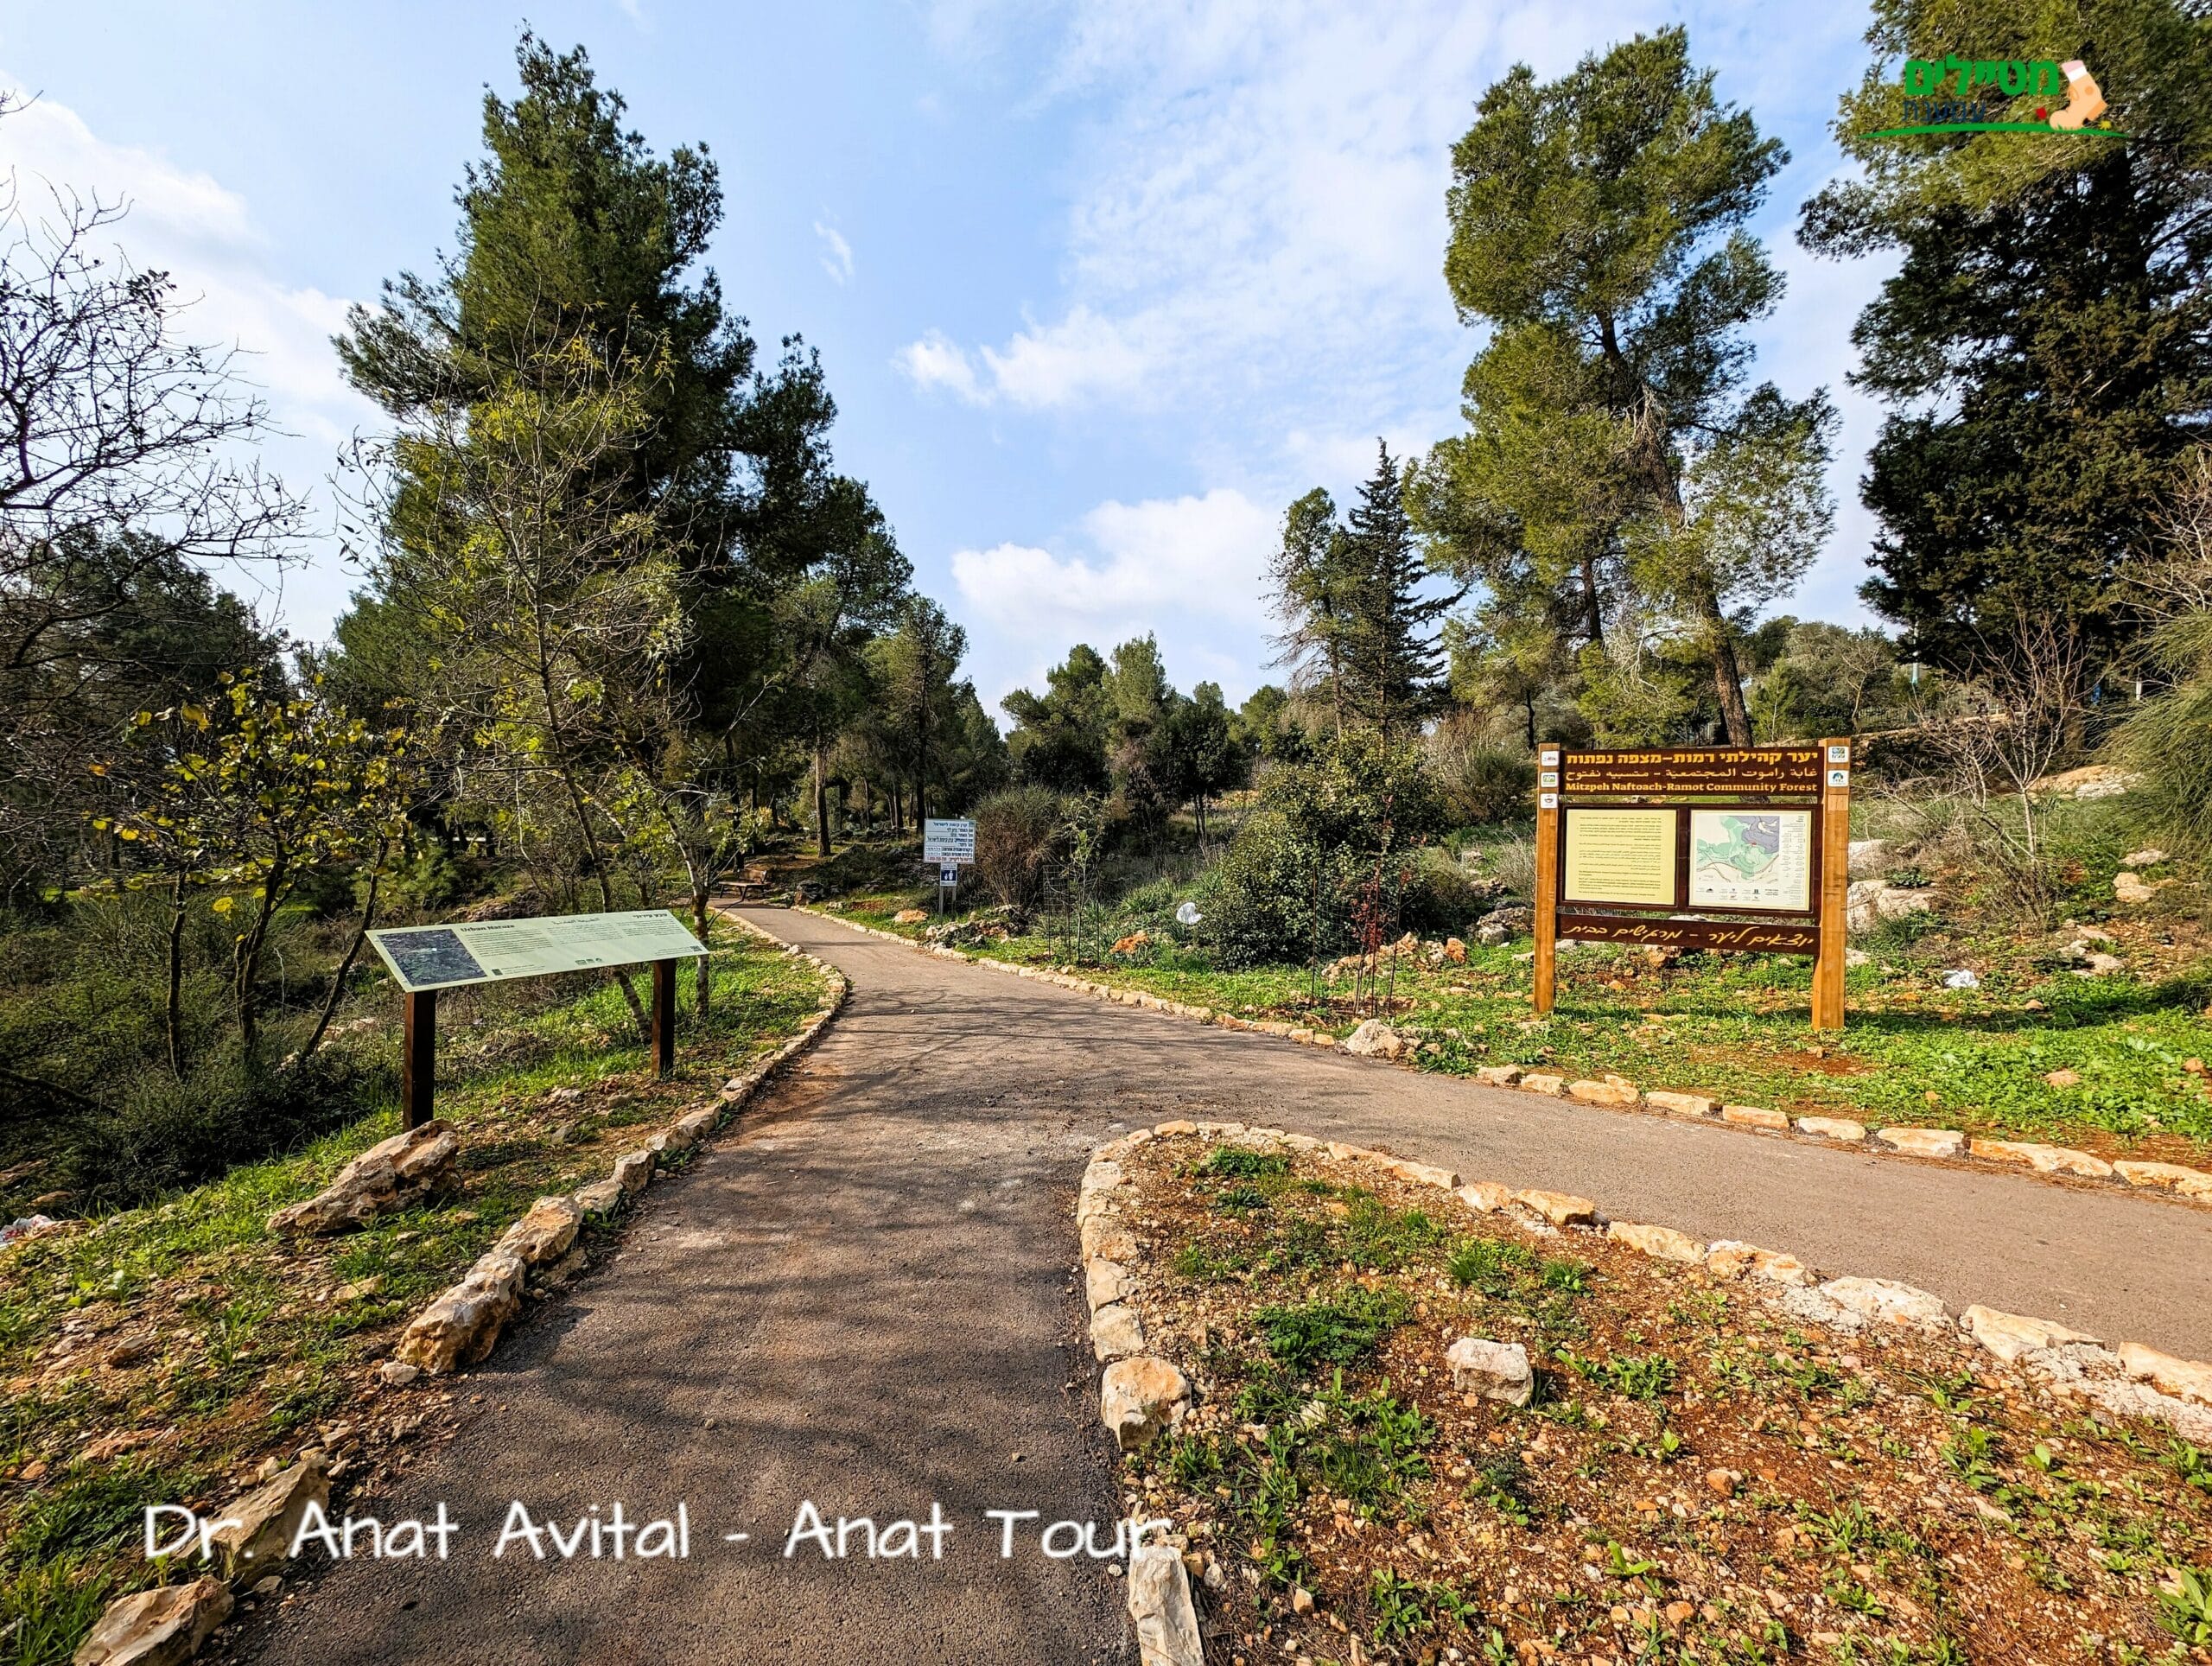 יער קהילתי רמות ירושלים, חניון יום ופריחה, צילום: ד"ר ענת אביטל